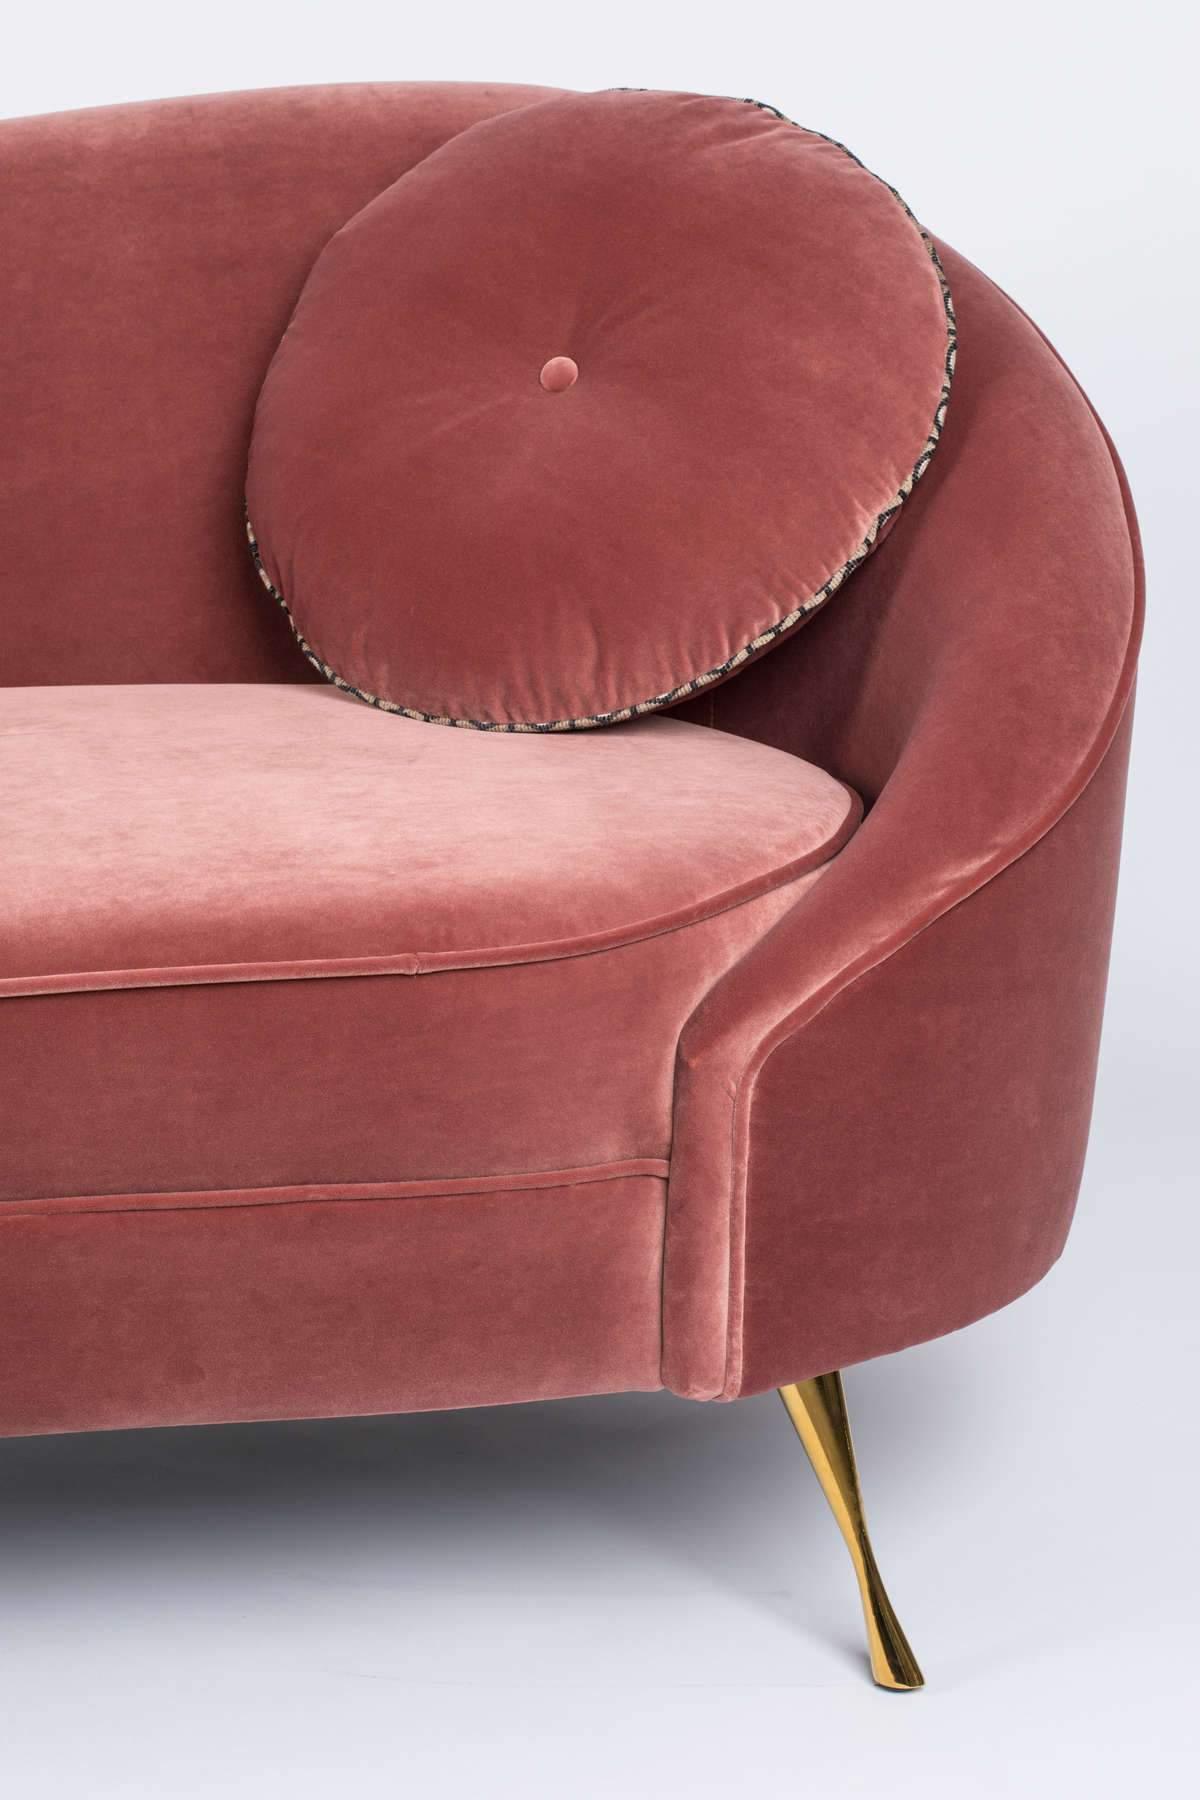 Ta pluszowa, aksamitna sofa wnosi do każdej przestrzeni kwintesencję paryskiego stylu. Sofa Bold Monkey I Am Not A Croissant ma asymetryczny design, z jedną stroną oparcia sofy wykonaną tak, aby była wyższa od drugiej.  Asymetria sofy jest zrównoważona czystymi liniami, mocnym kształtem i okrągłą poduszką do rzucania.